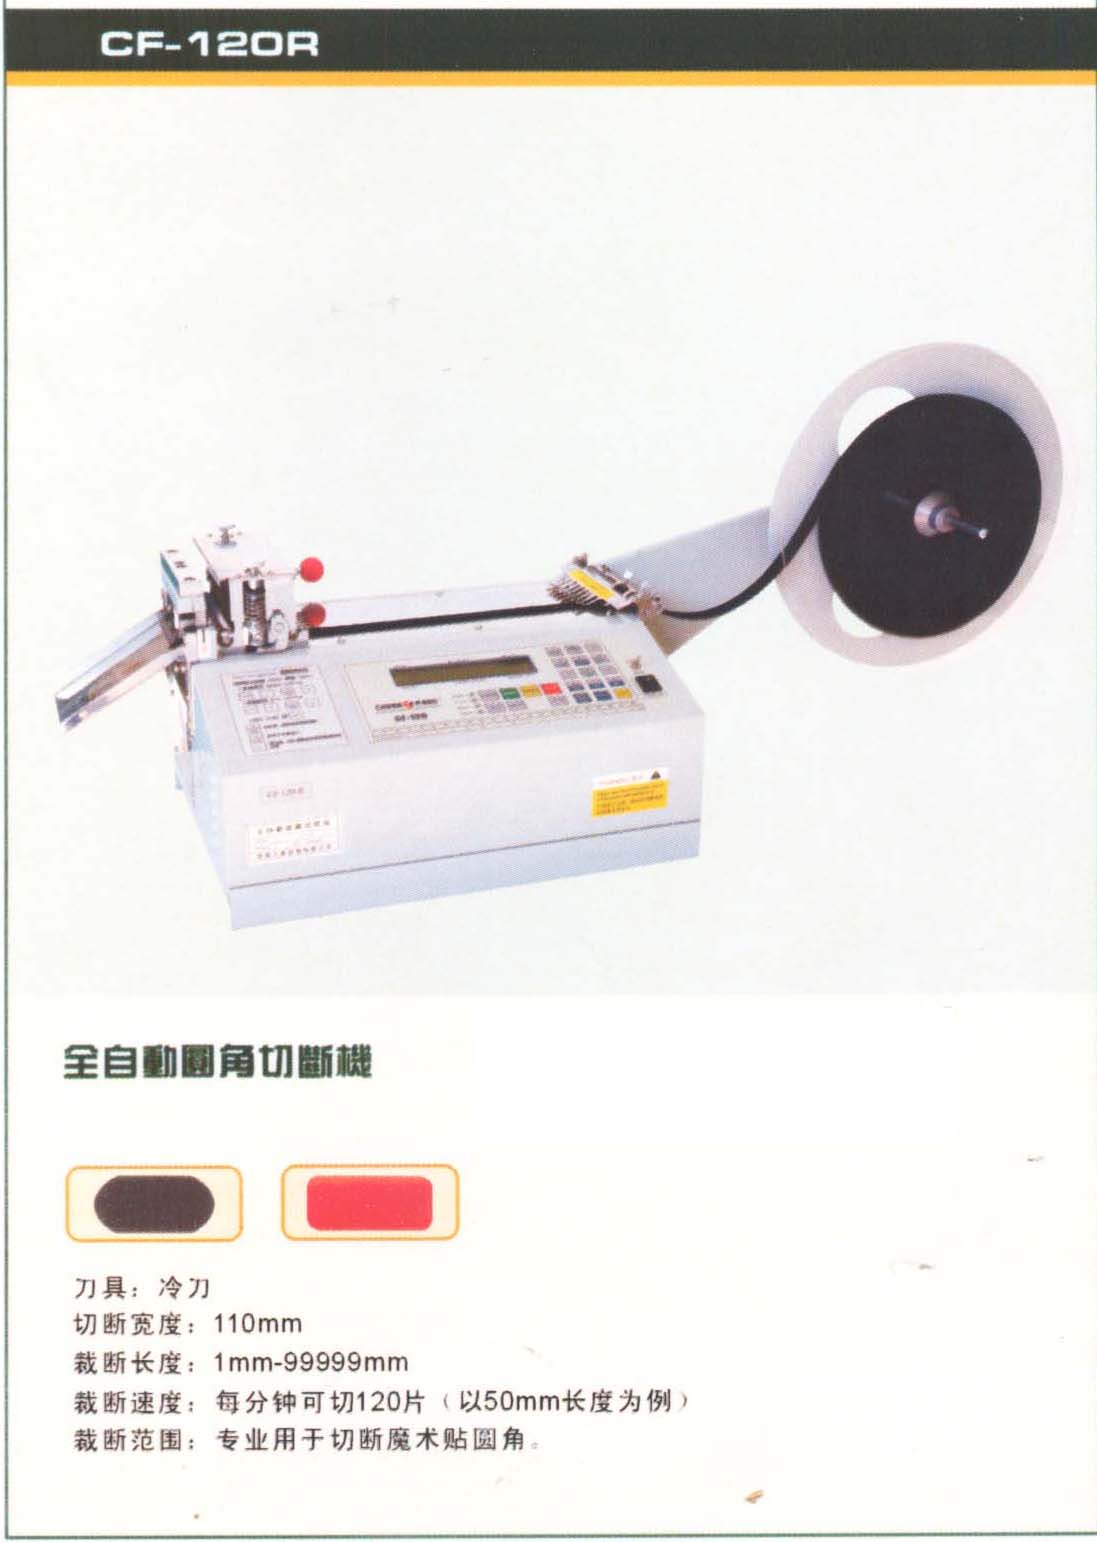  Velcro Round Cutter (Klett-Runde Cutter)